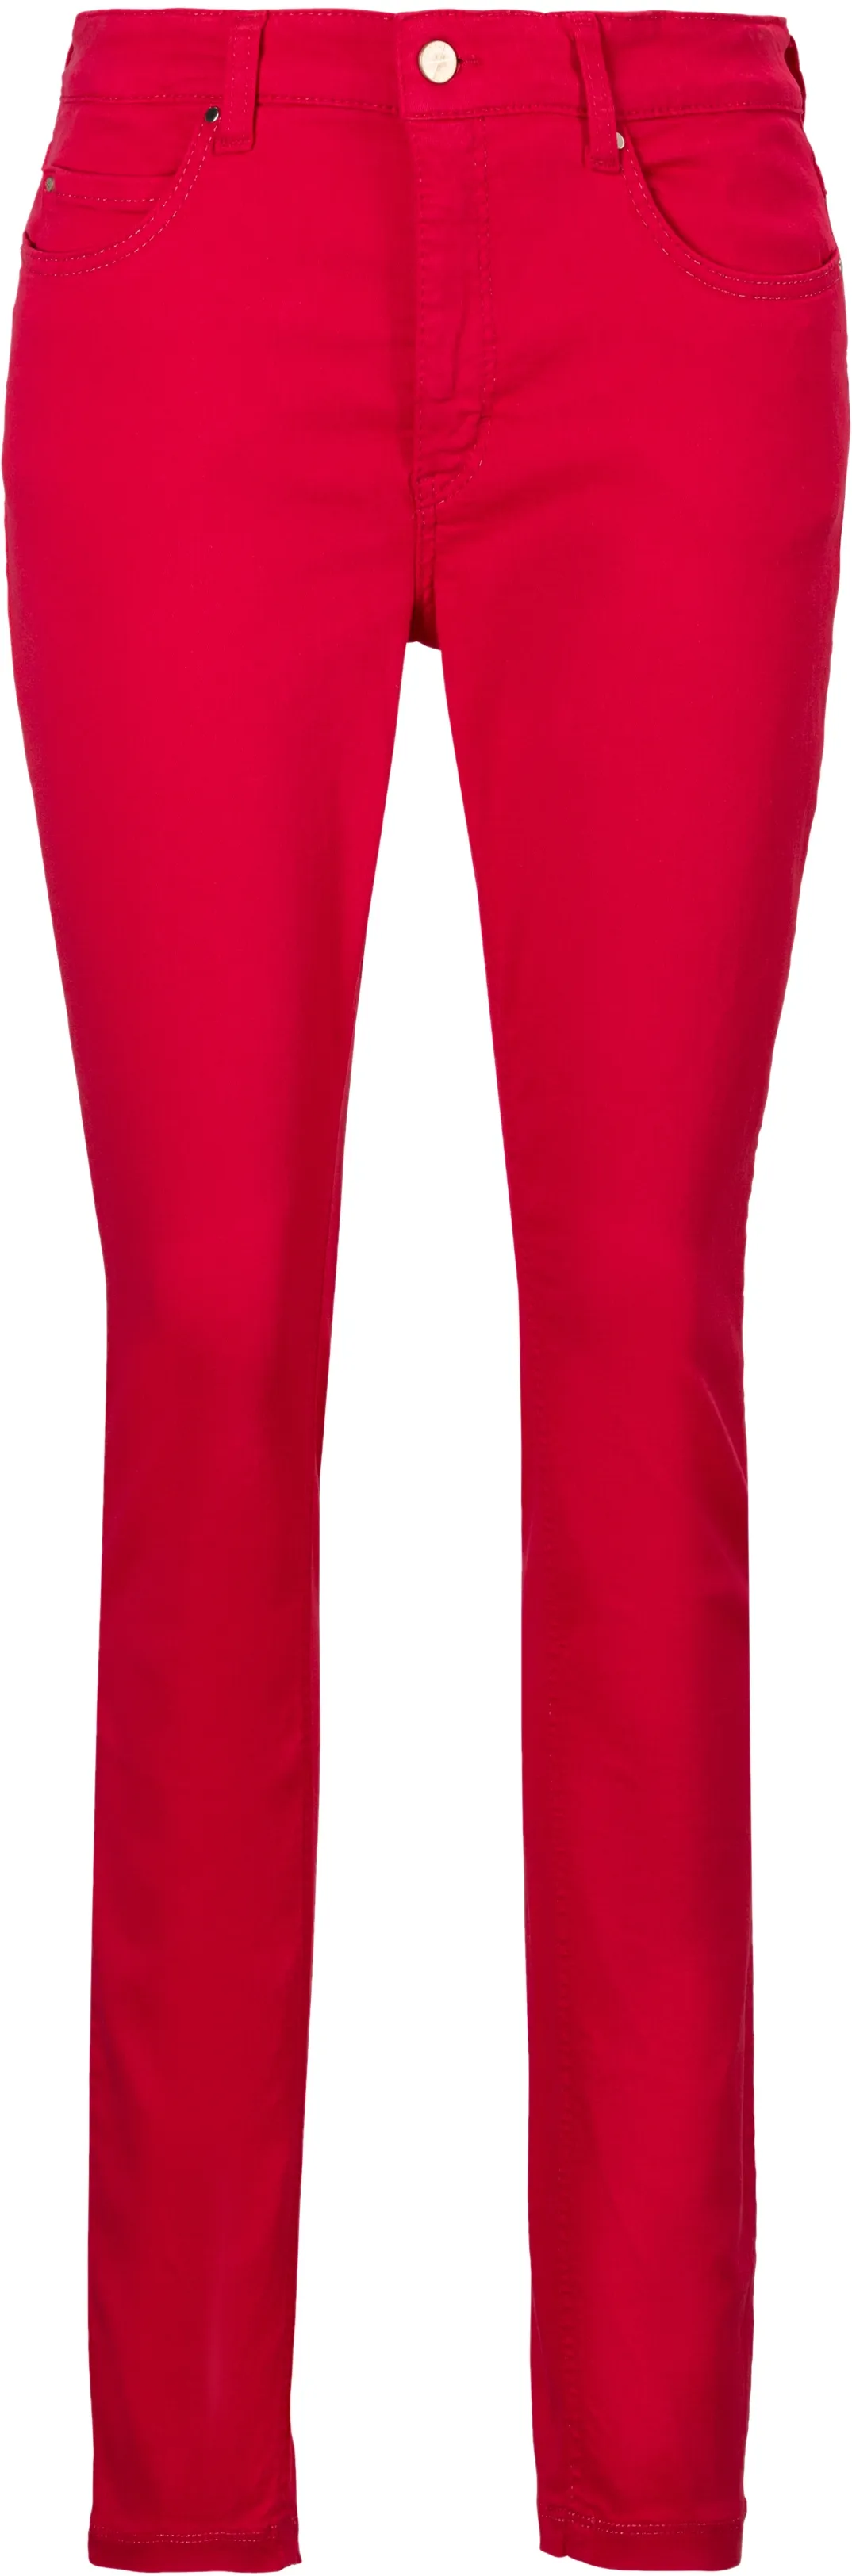 Skinny-fit-Jeans MAC "Dream Skinny" Gr. 38, Länge 30, pink (virtual pink) Damen Jeans Röhrenjeans Hochelastische Qualität sorgt für den perfekten Sitz Bestseller